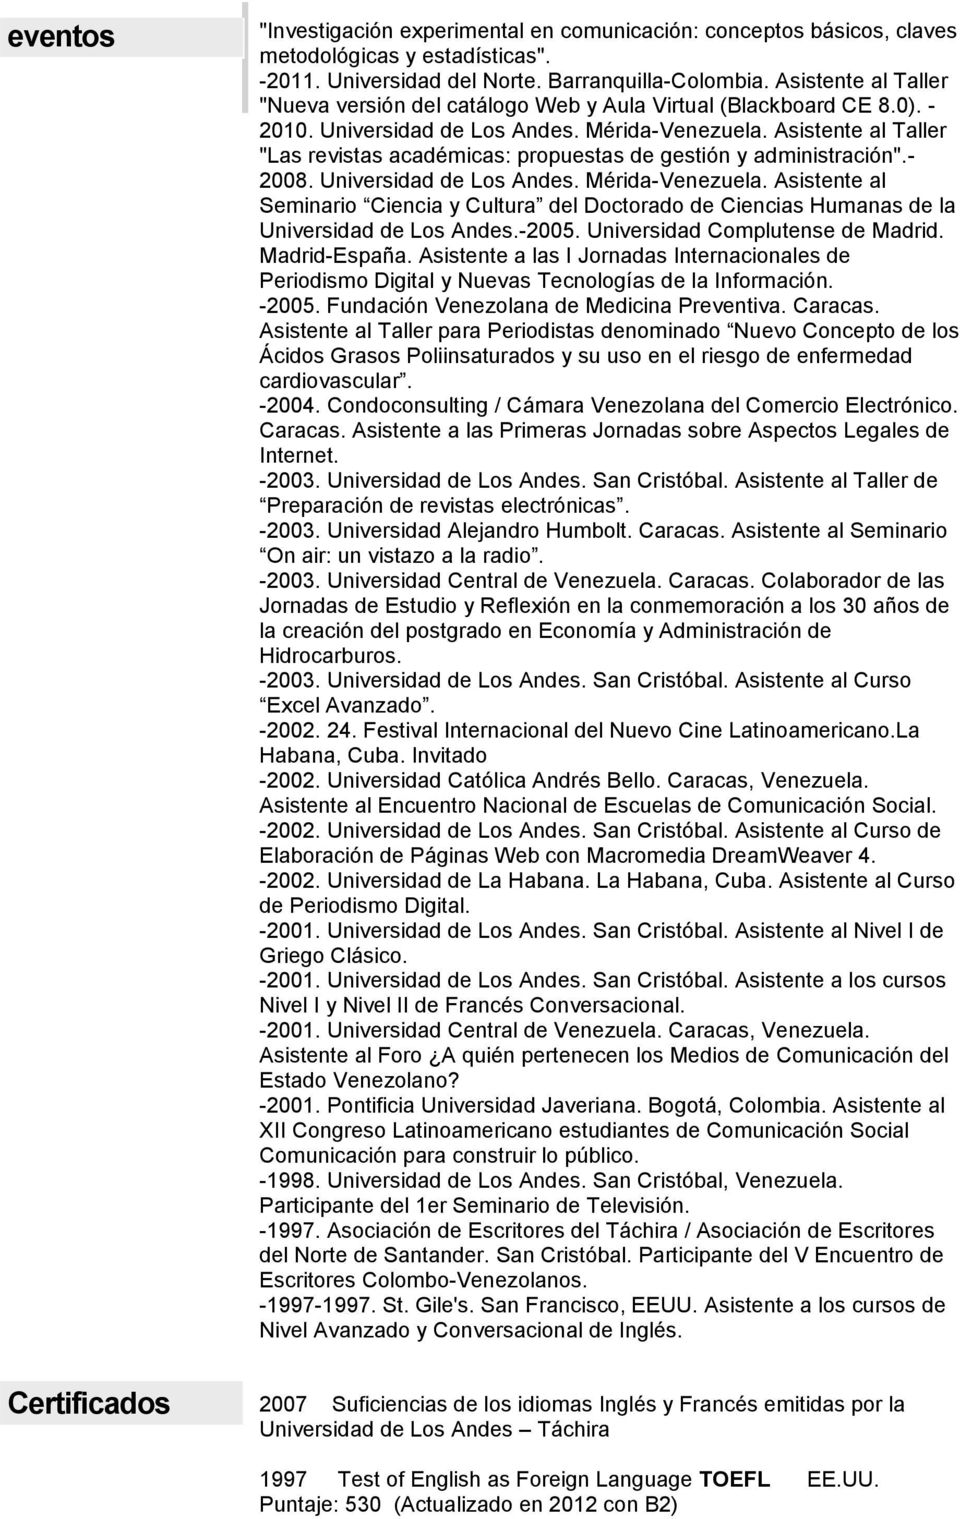 Asistente al Taller "Las revistas académicas: propuestas de gestión y administración".- 2008. Universidad de Los Andes. Mérida-Venezuela.